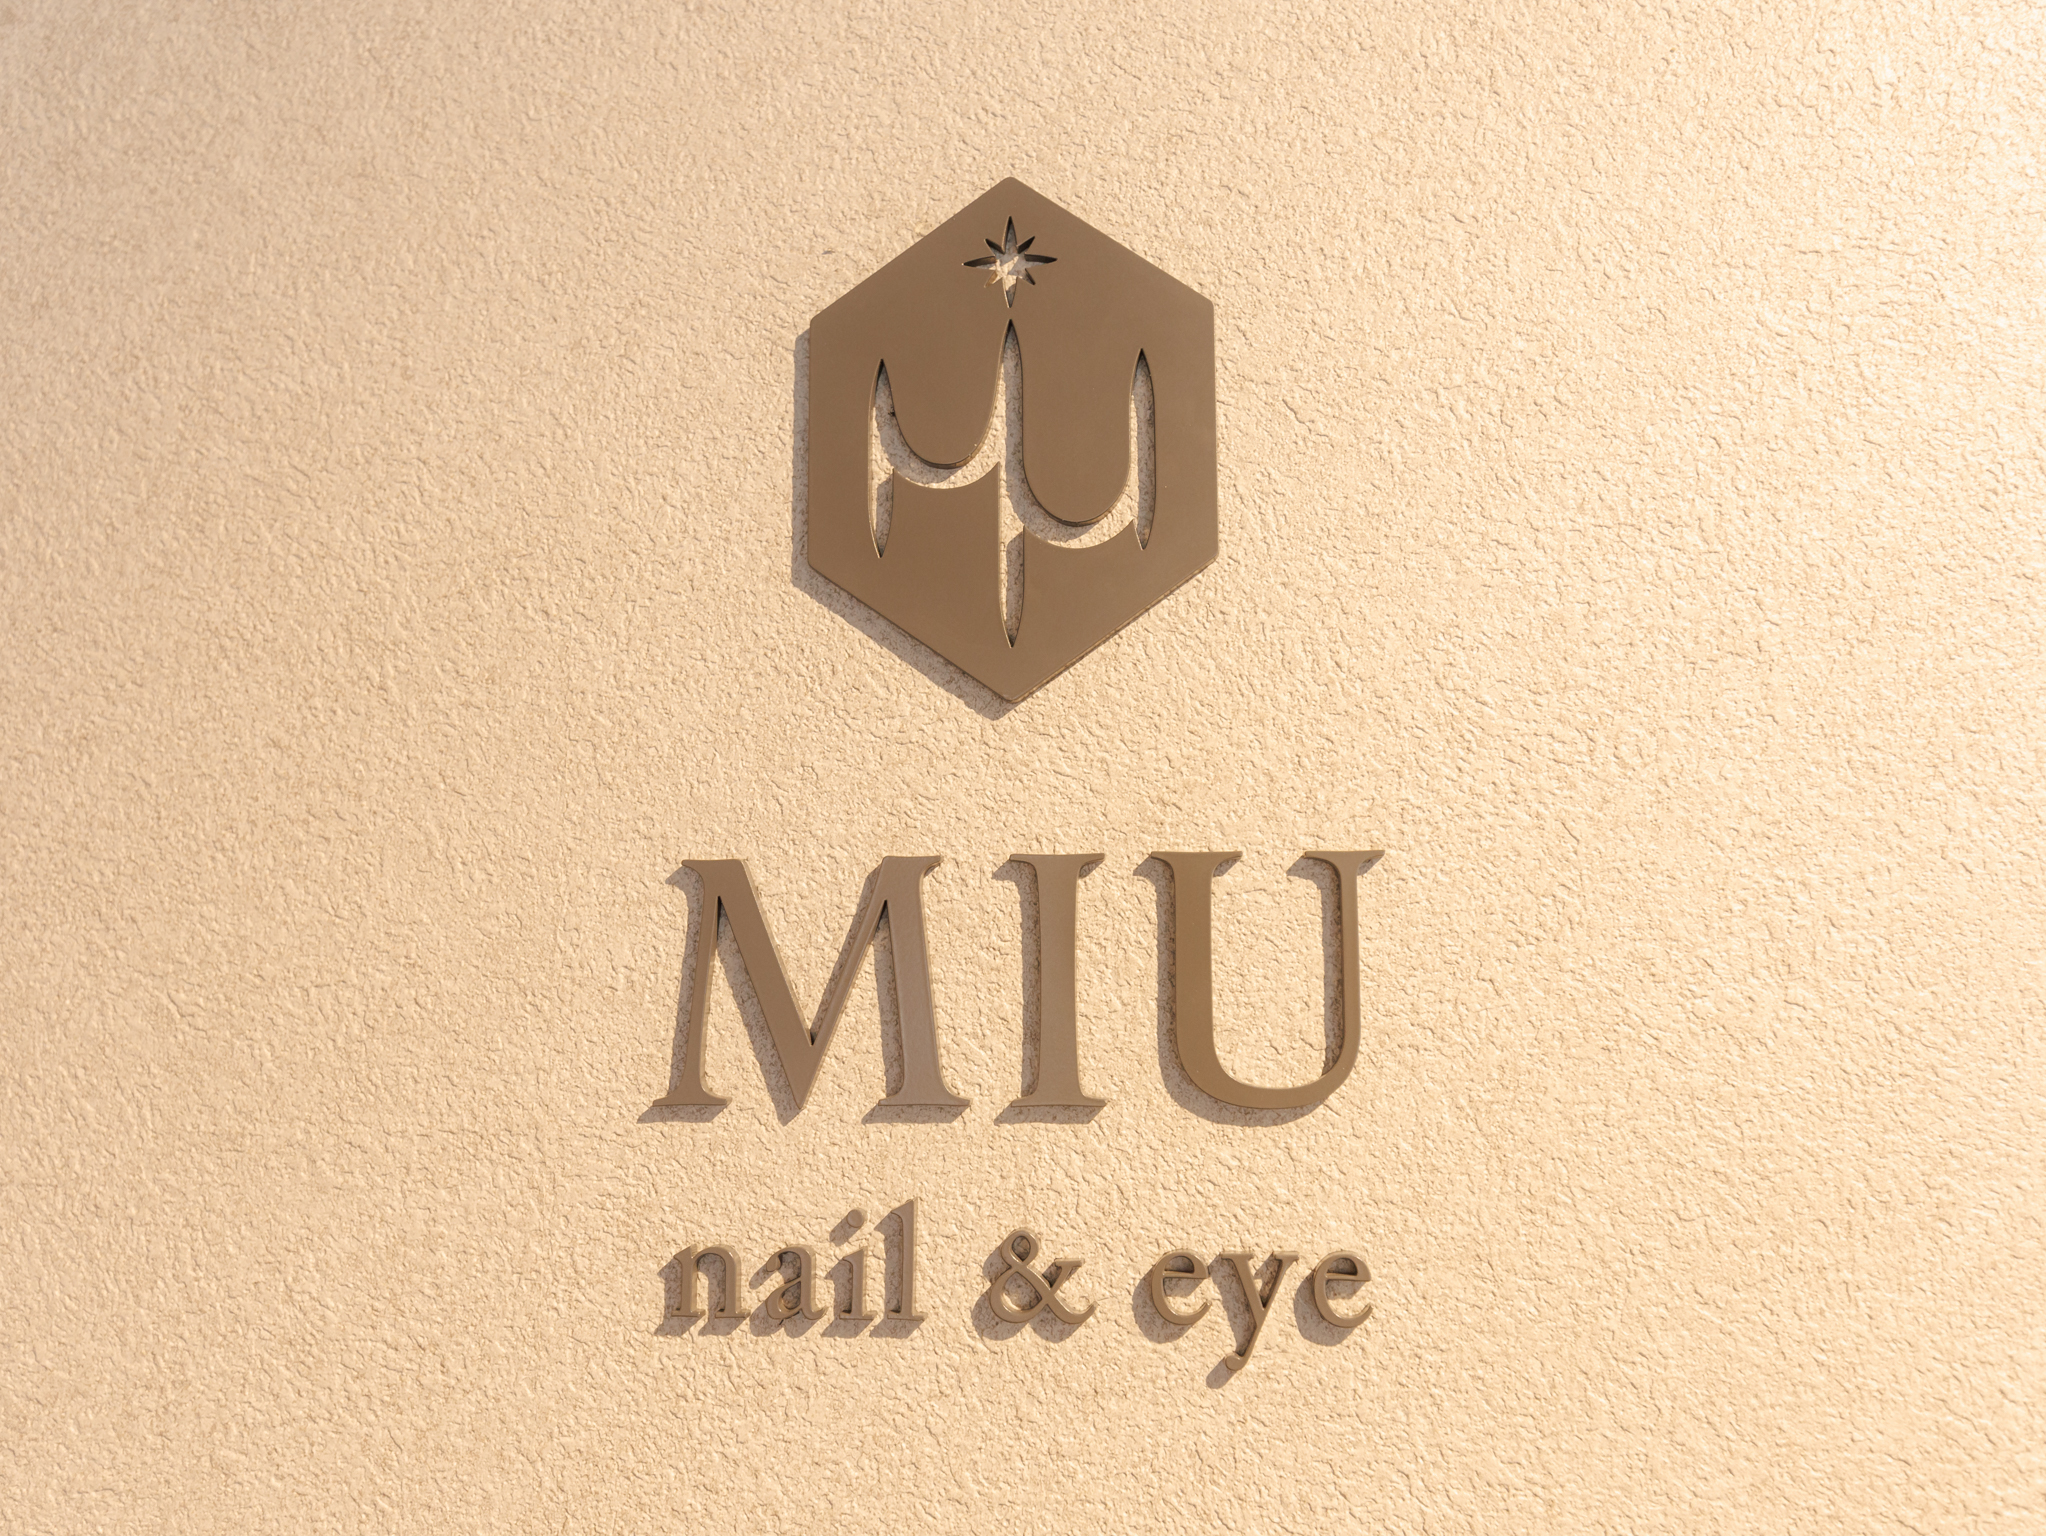 MIU nail&eye